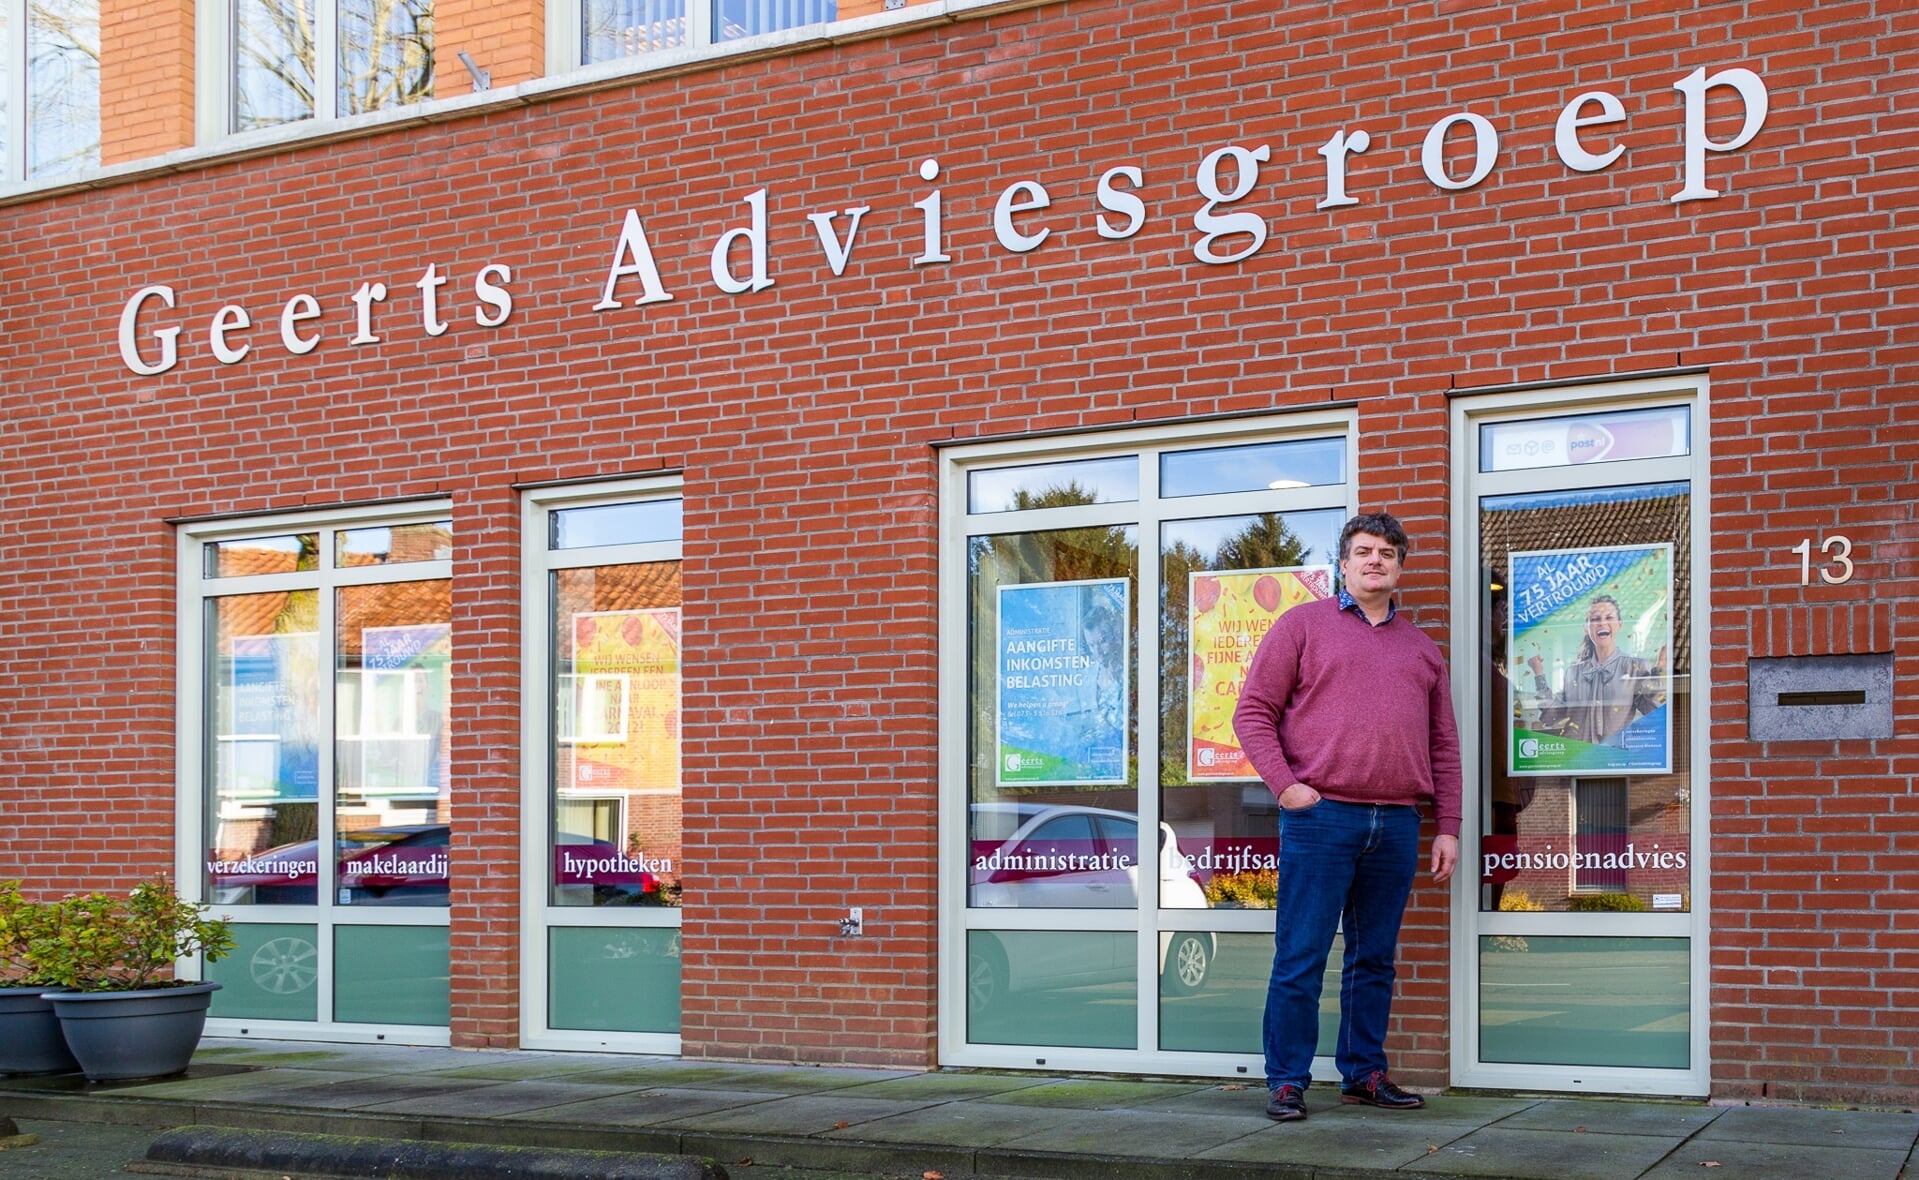 Alwien Geerts voor zijn hoofdkantoor aan de Dorpsstraat in Gemonde. De eigenaar van Geerts Adviesgroep is naast ondernemer een betrokken inwoner, die zich op tal van vlakken inzet voor zijn dorp. (Foto: Hans van Doorn).